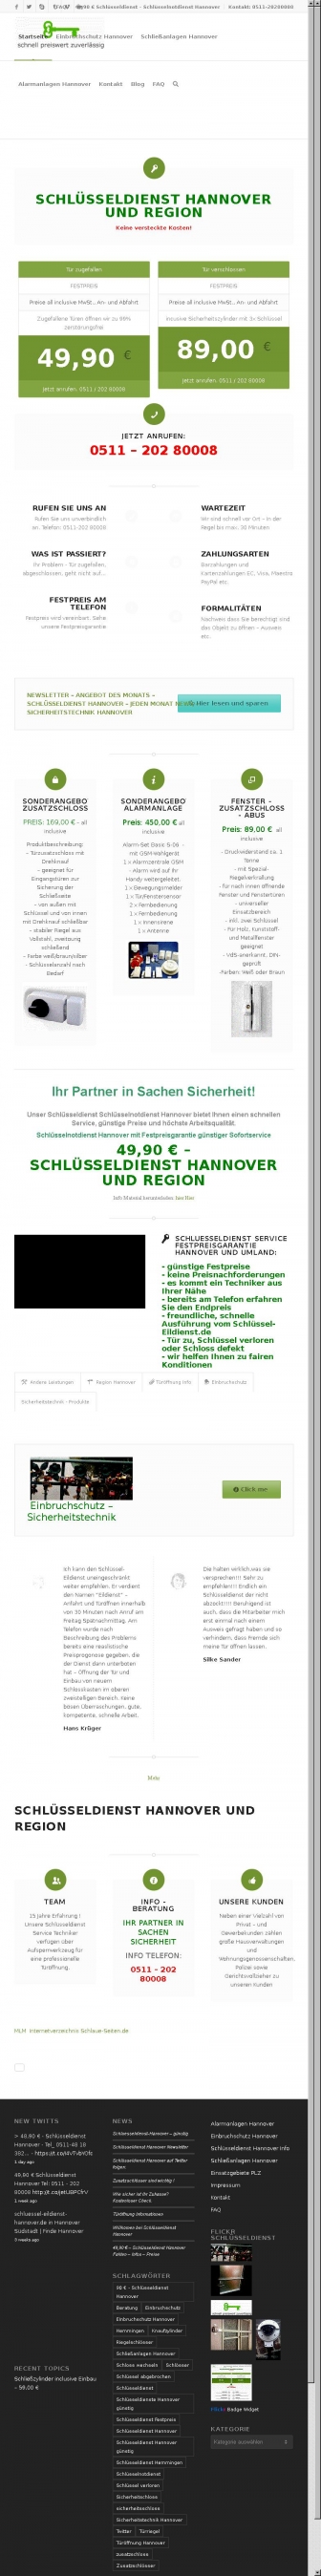 http://schluessel-eildienst-hannover.de